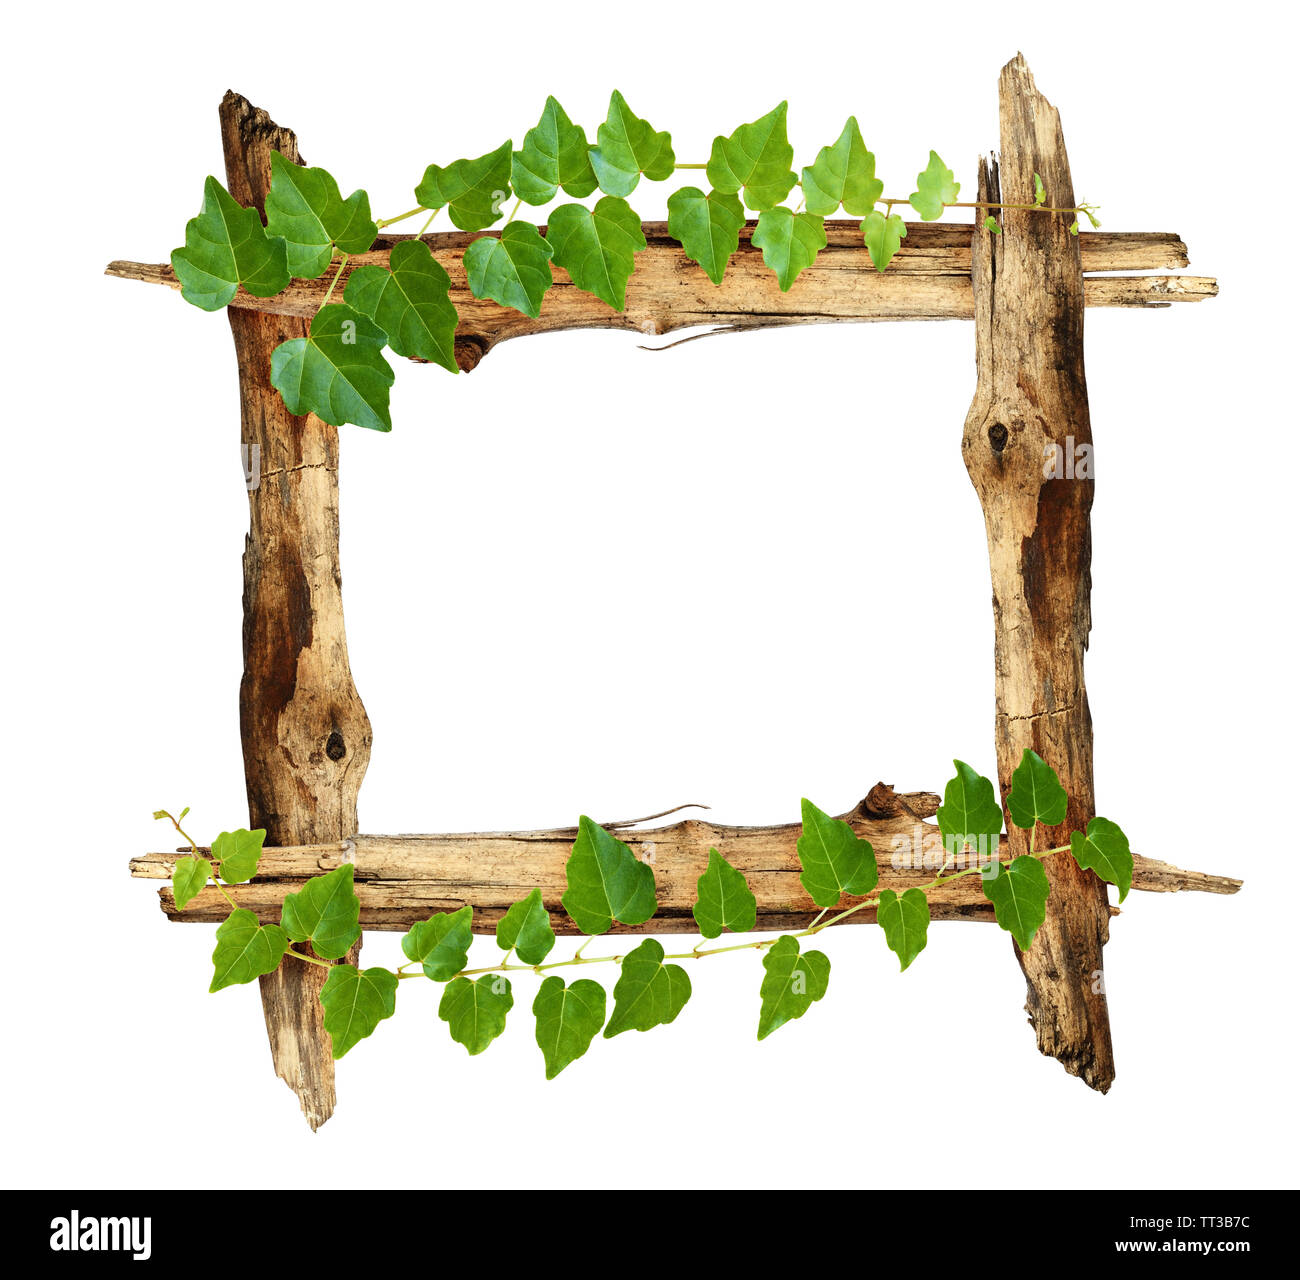 Rahmen mit alten Stücke Holz und Efeu Zweige auf weißem Hintergrund  Stockfotografie - Alamy